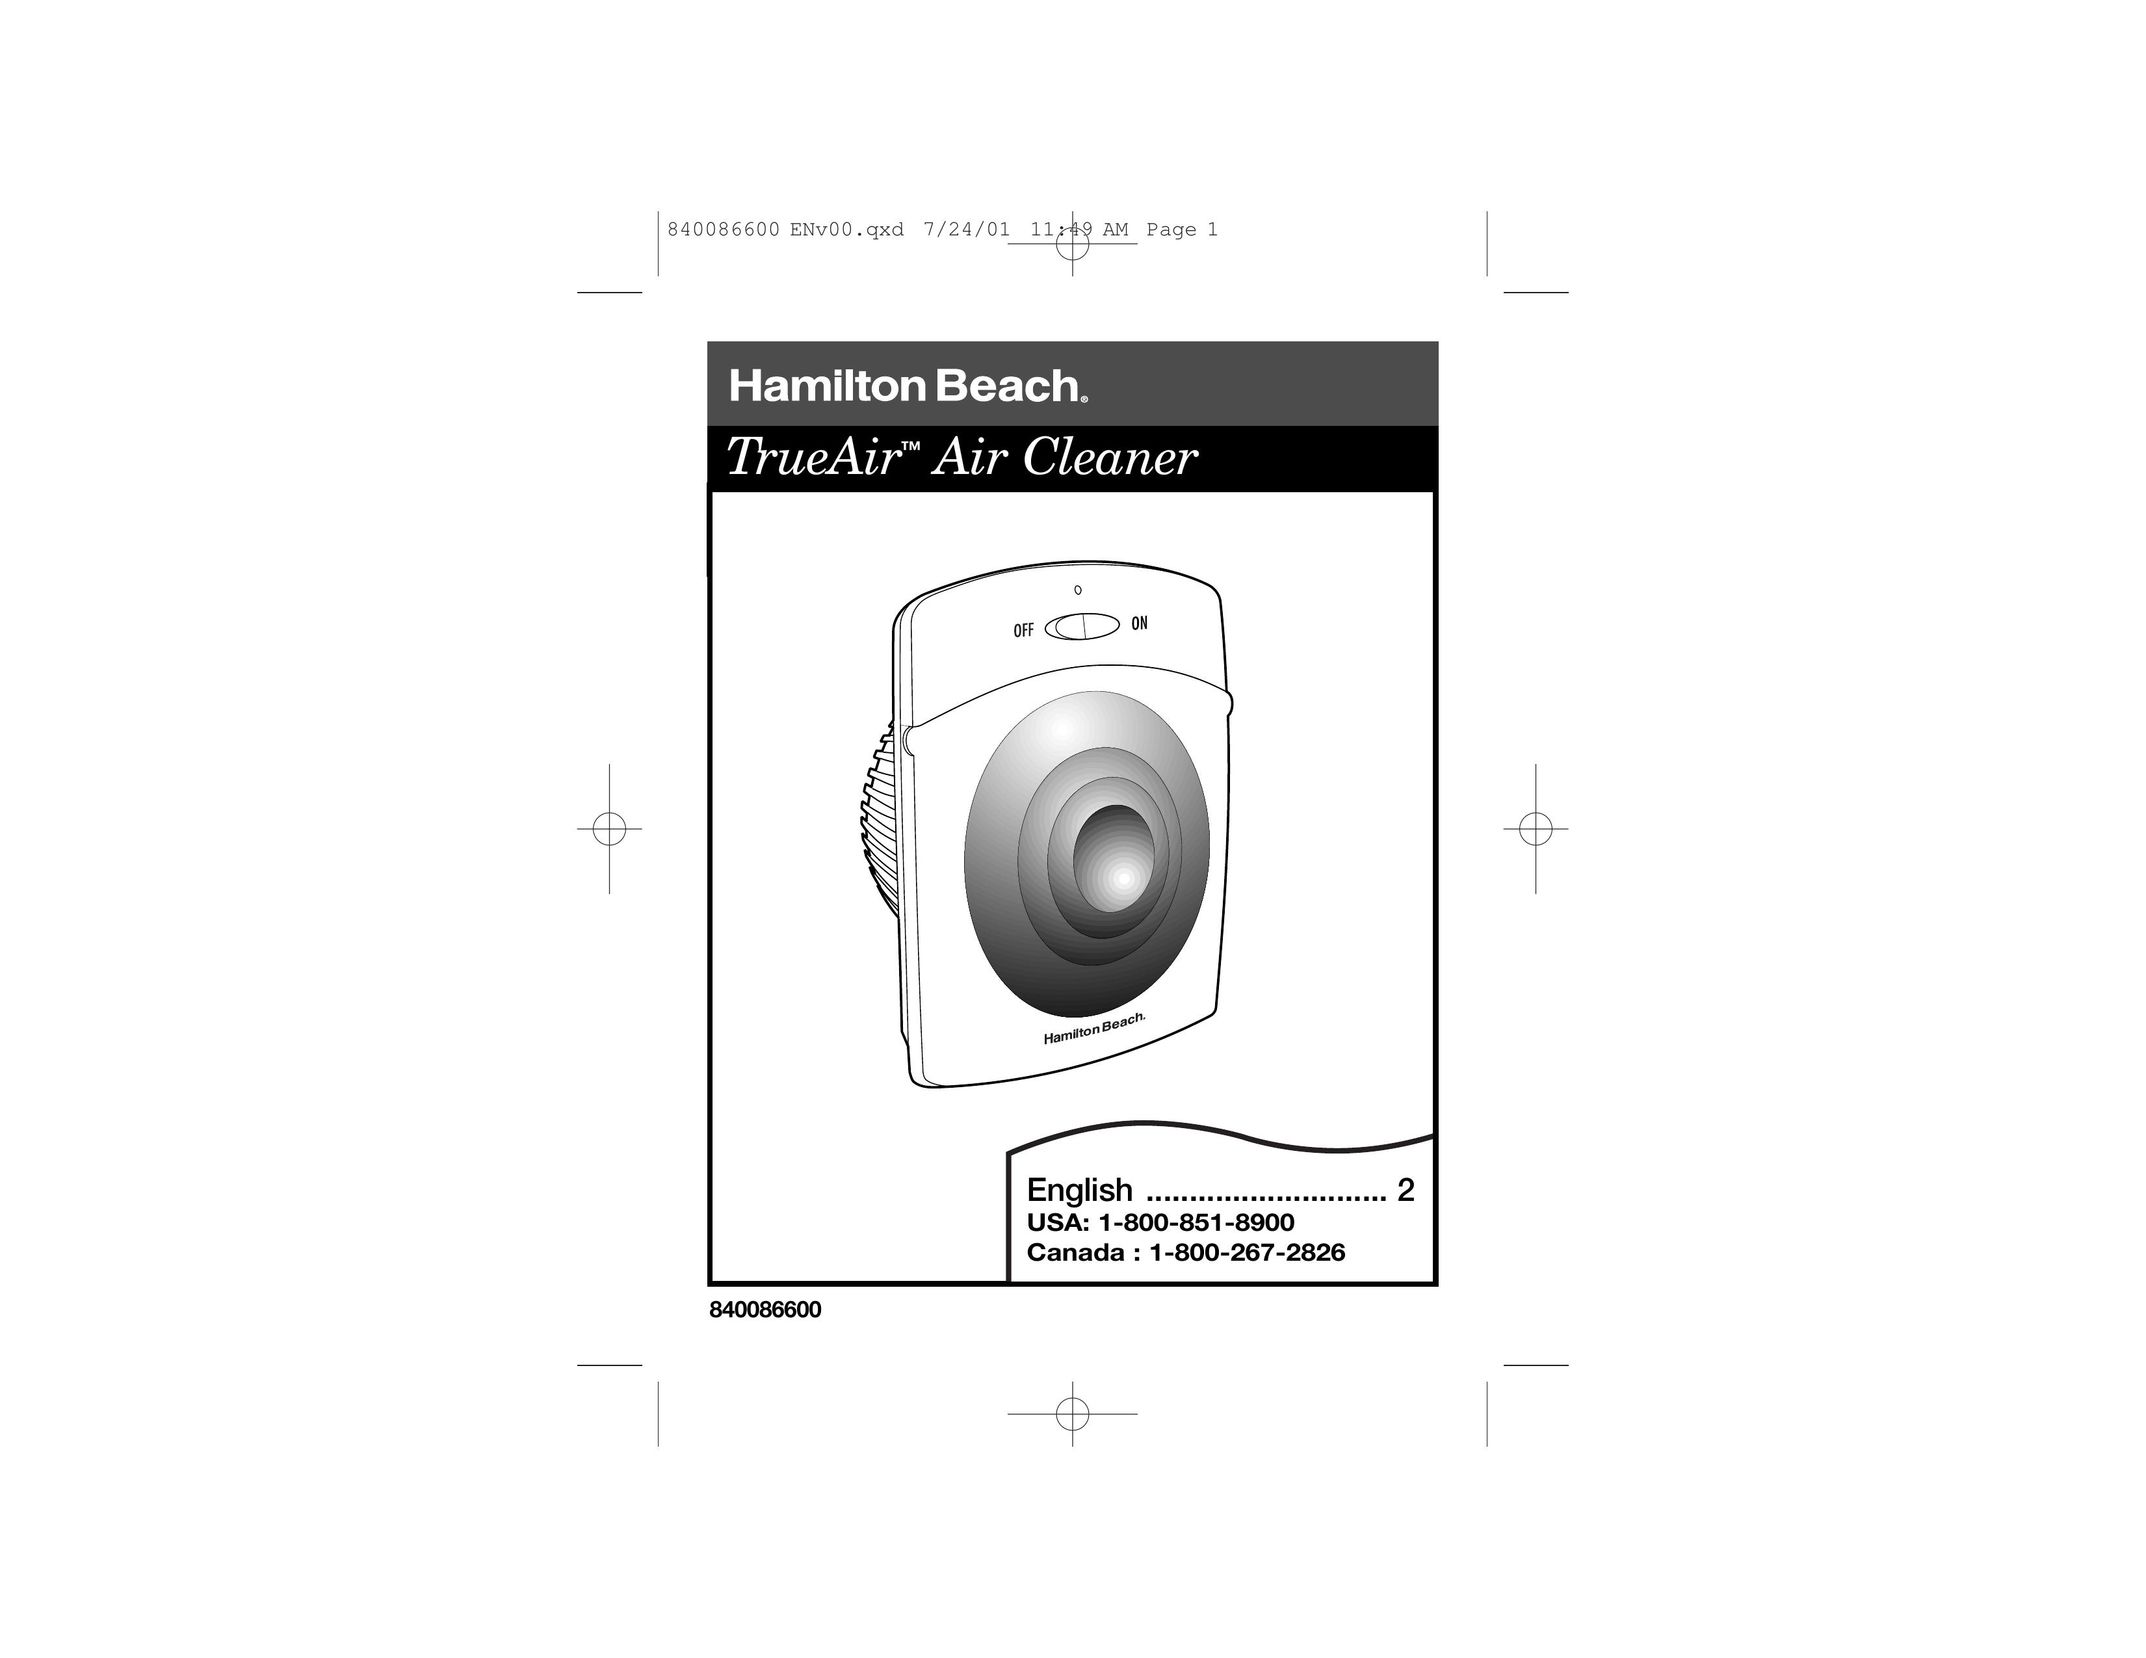 Hamilton Beach TrueAir Air Cleaner User Manual